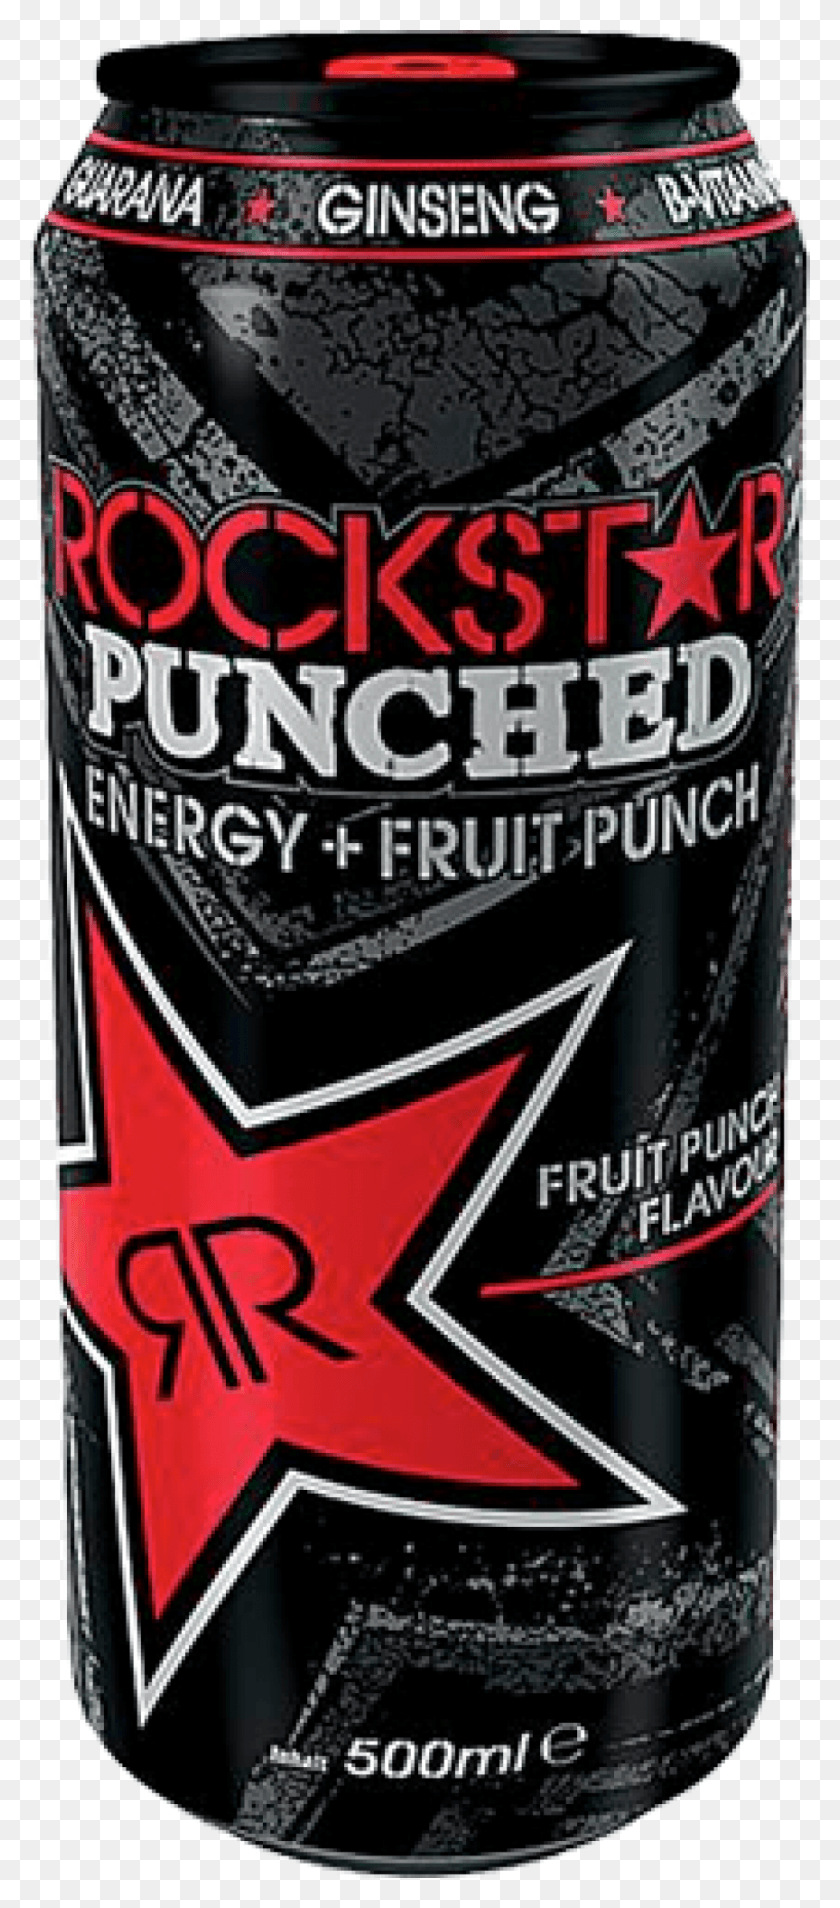 864x2048 Rockstar Punched Energy Fruit Punch 05 Литров Rockstar Фруктовый Пунш, Банка, Банка, Напиток Hd Png Скачать